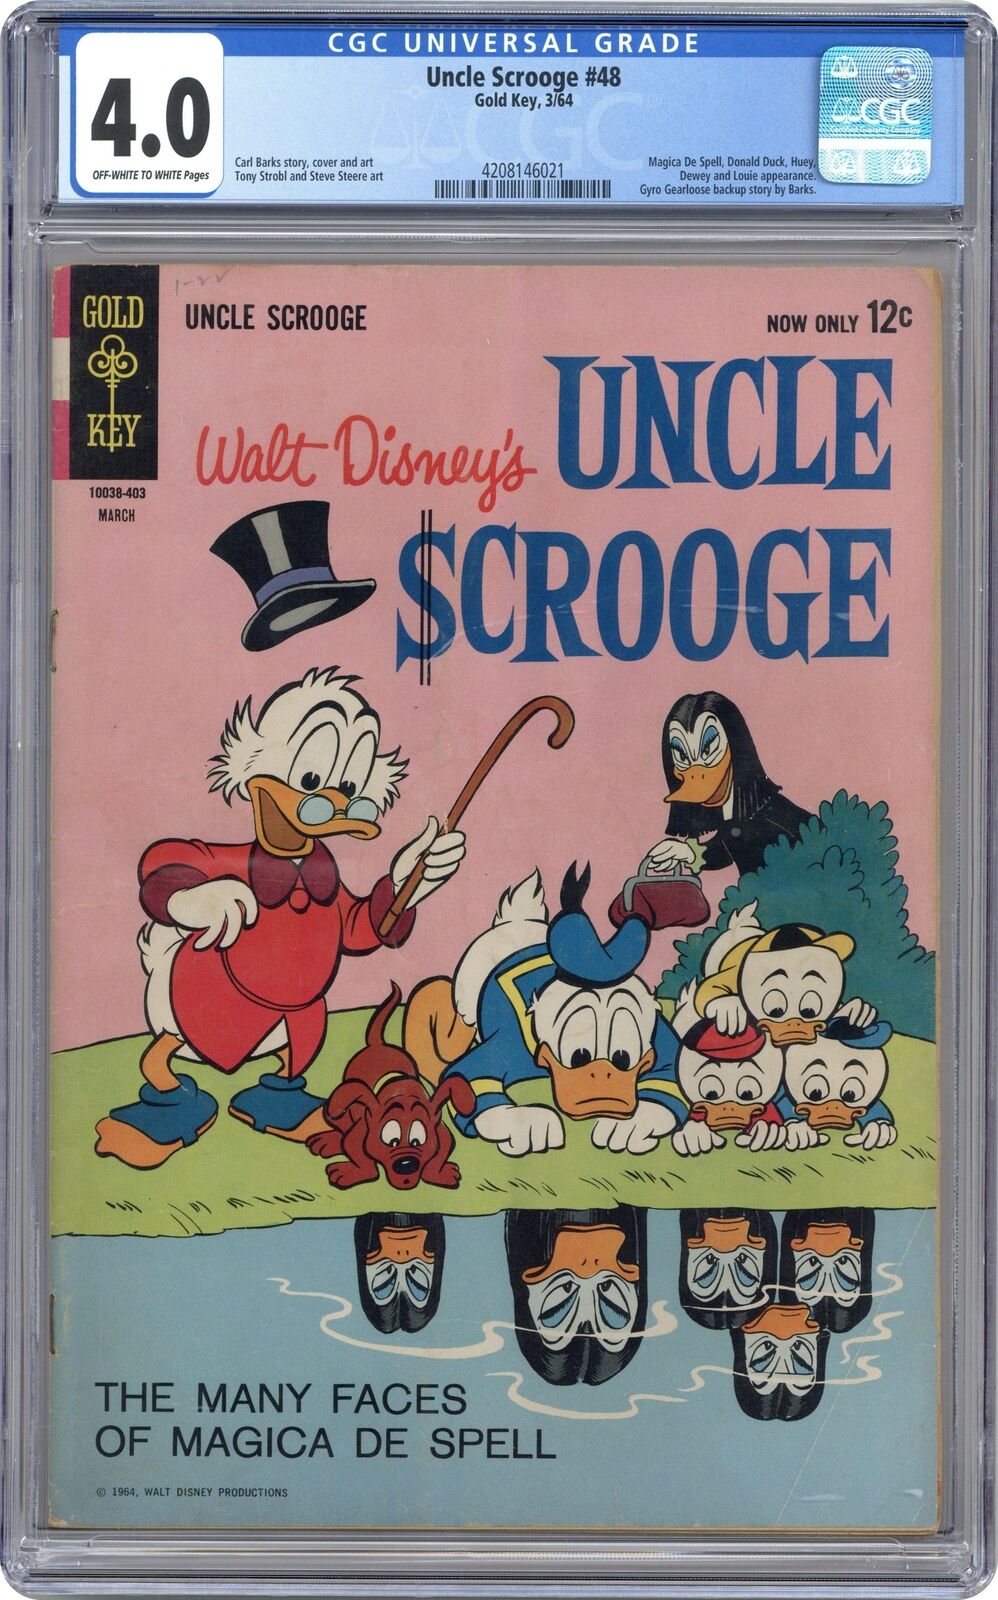 Uncle Scrooge #48 CGC 4.0 1964 4208146021